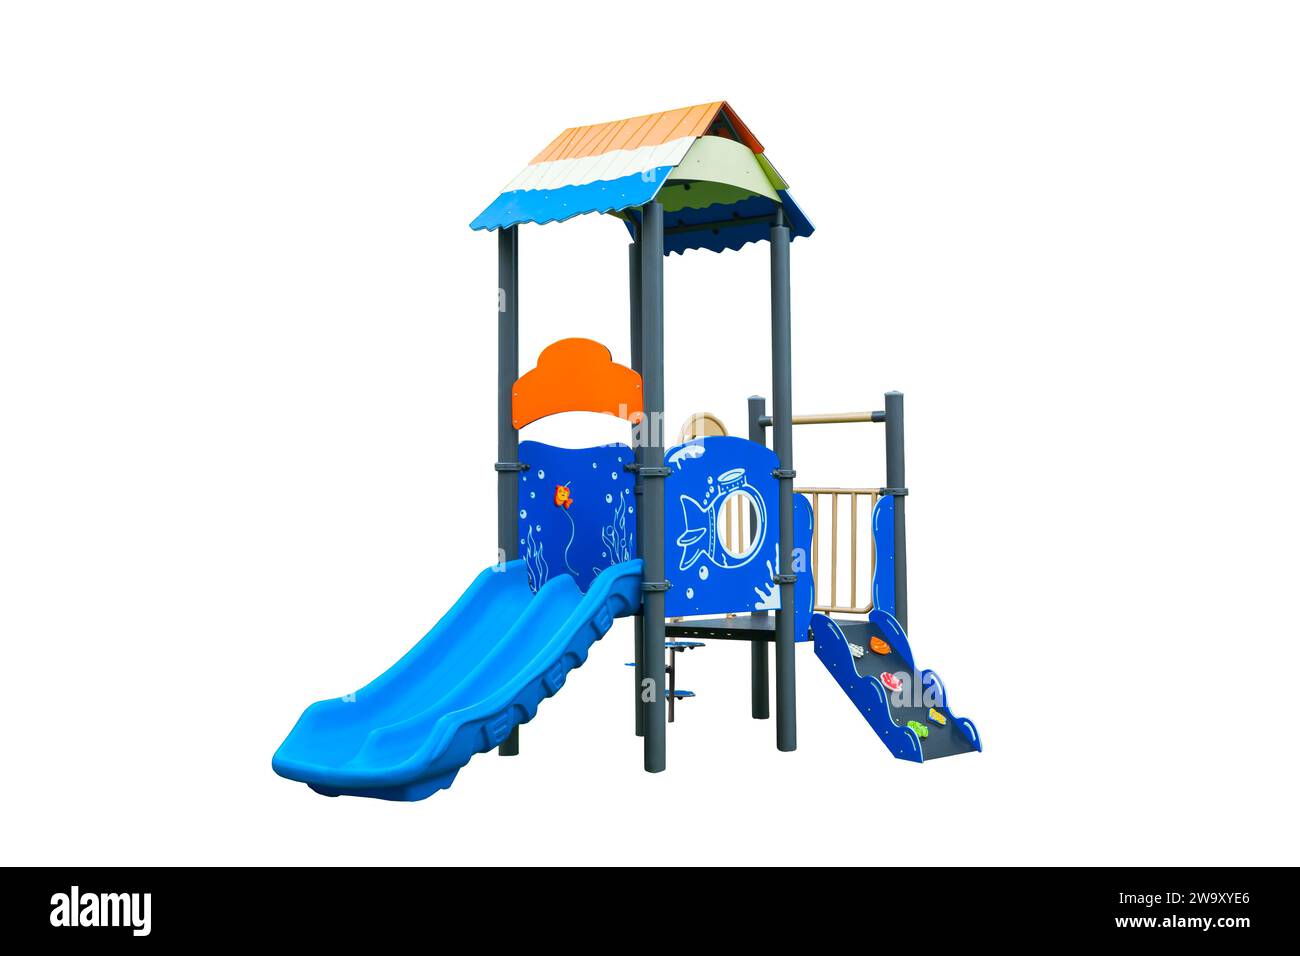 Bunte Outdoor-Rutsche Spielplatz Set isoliert auf weißem Hintergrund Stockfoto